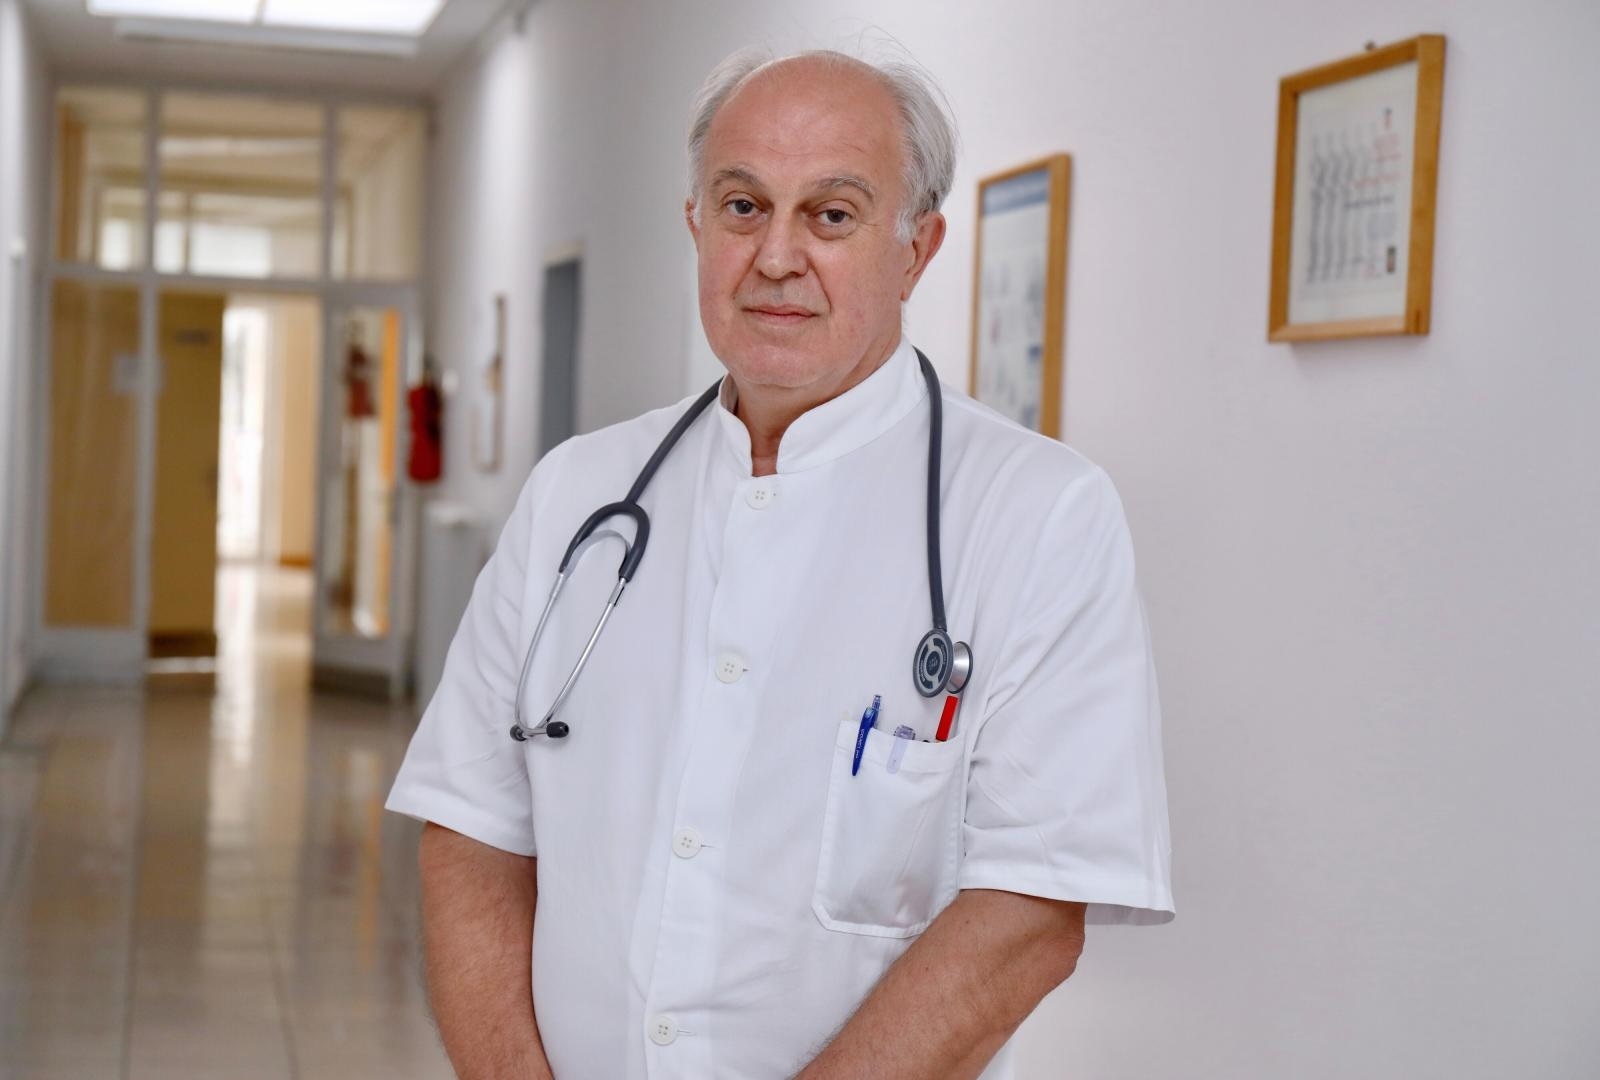 09.08.2021.,Split- Dr. Ivo Ivic ravnatelj klinike za inektologiju splitskg KBC-a
Photo:Ivo Cagalj/PIXSELL